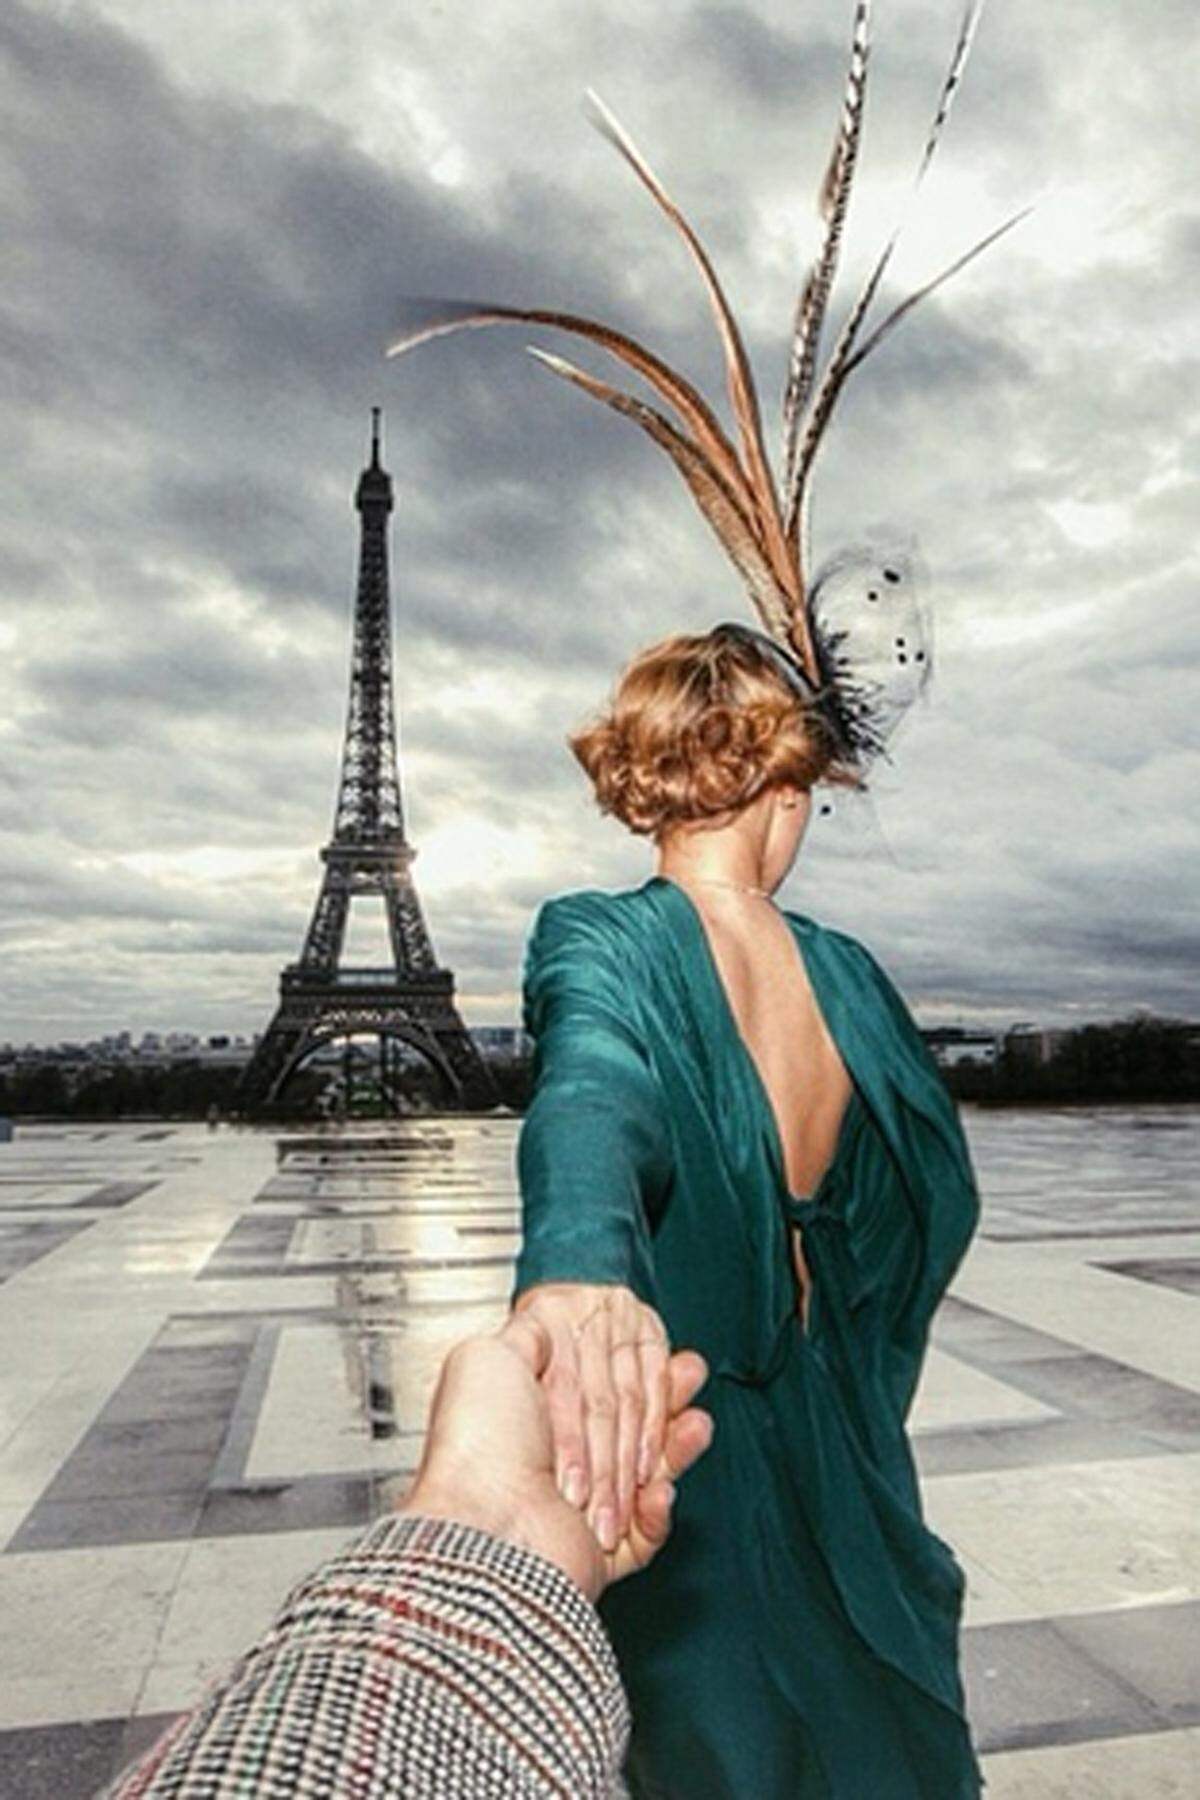 Auf den Bildern der Fotoserie sieht es fast so aus, als würde sie ihn durch die Welt ziehen. Vor dem Eiffelturm in Paris.